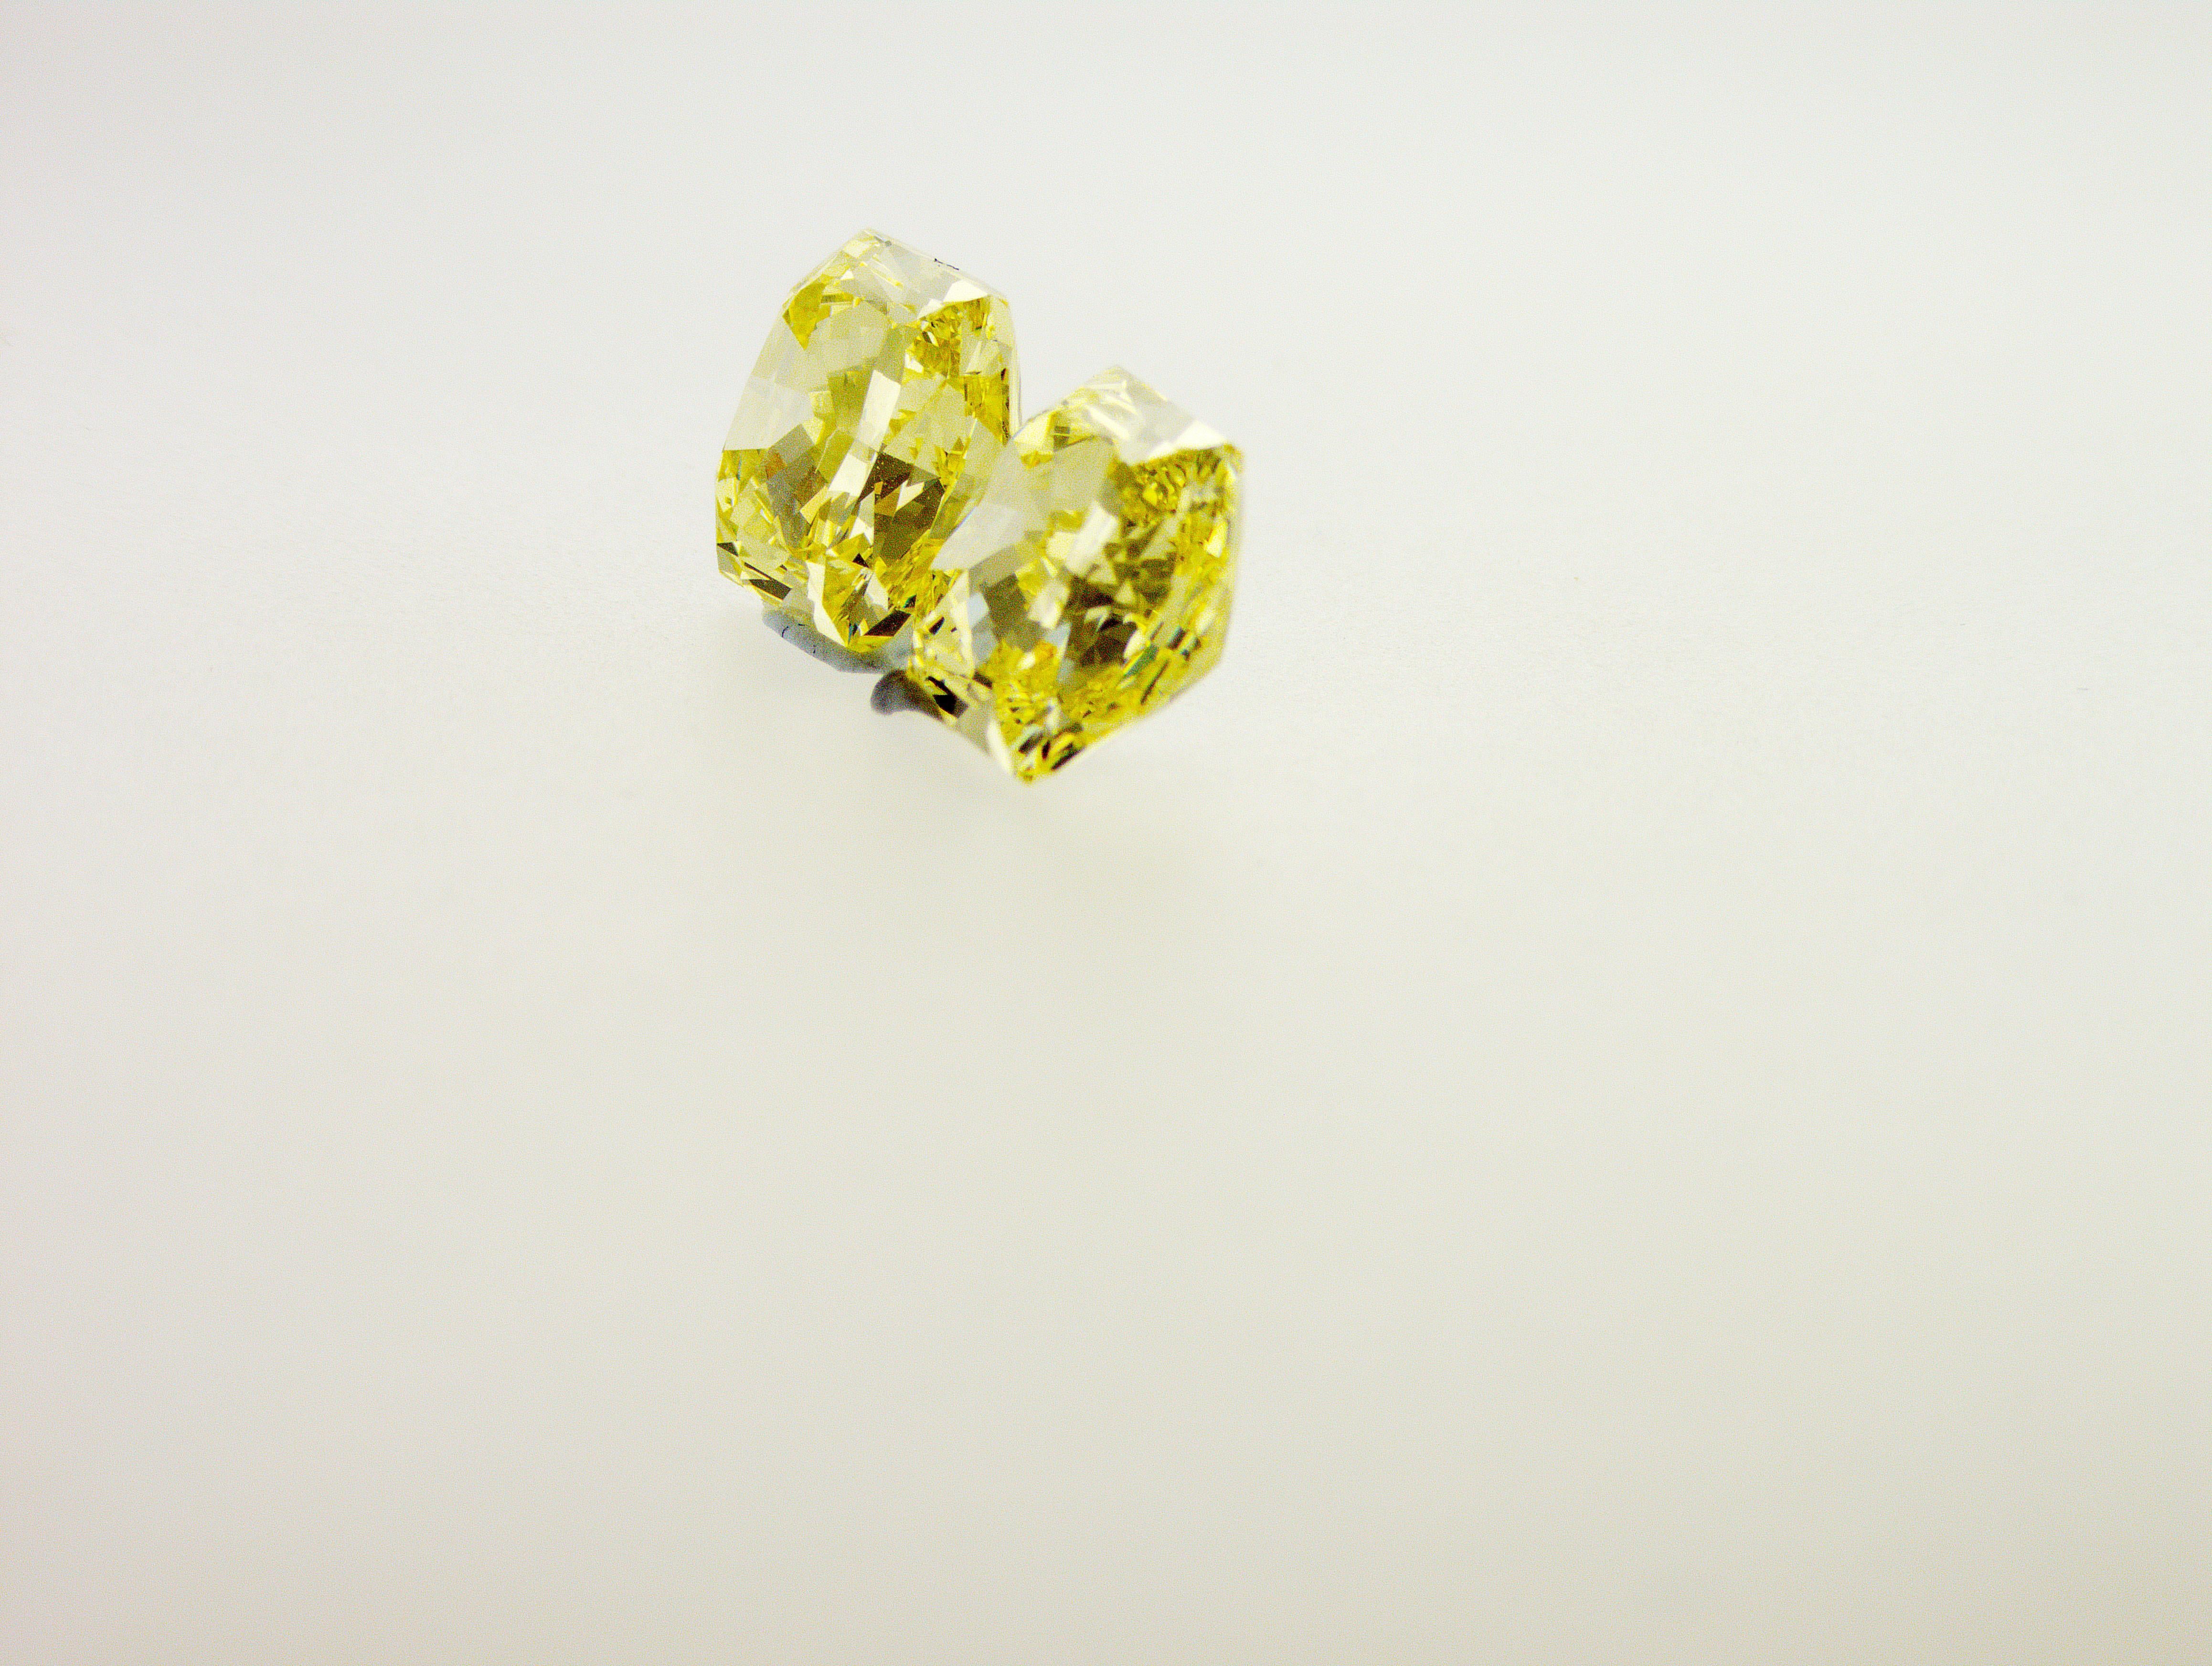 Sehr einzigartiges und seltenes Paar von Fancy Intense Yellow Diamanten 3,02 und 3,07 Karat. Diese beiden Diamanten wurden aus einem einzigen Rohdiamanten hergestellt. 
1. Diamant 8,39x7,81x5,01 mm - 3,02 ct Fancy Intensives Gelb
2. Diamant